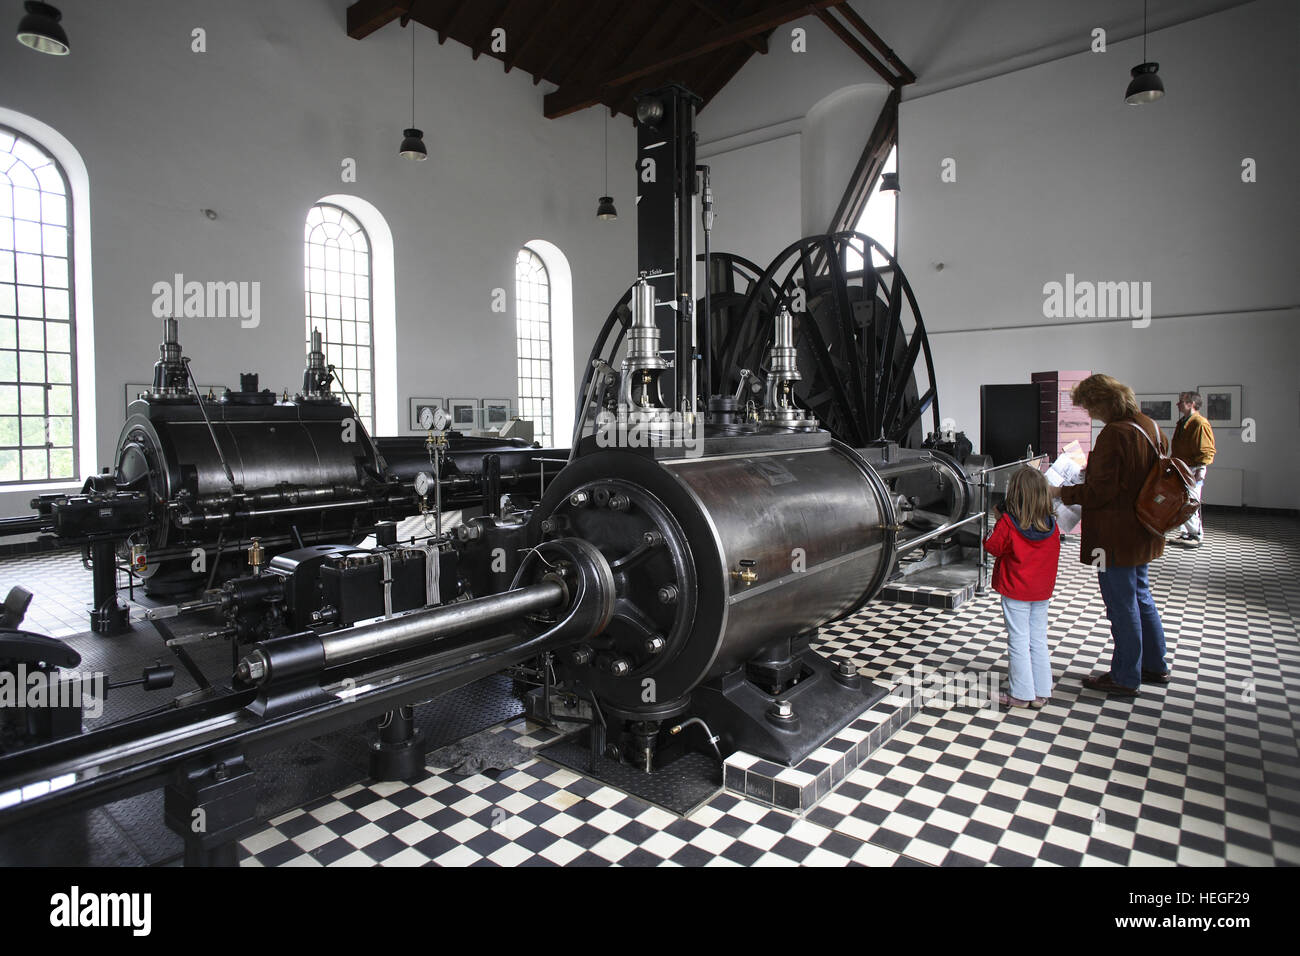 Germania, Witten, Vestfalia museo industria Zeche Nachtigall, motore hall, uno dei più antichi motori a vapore della regione della Ruhr Foto Stock